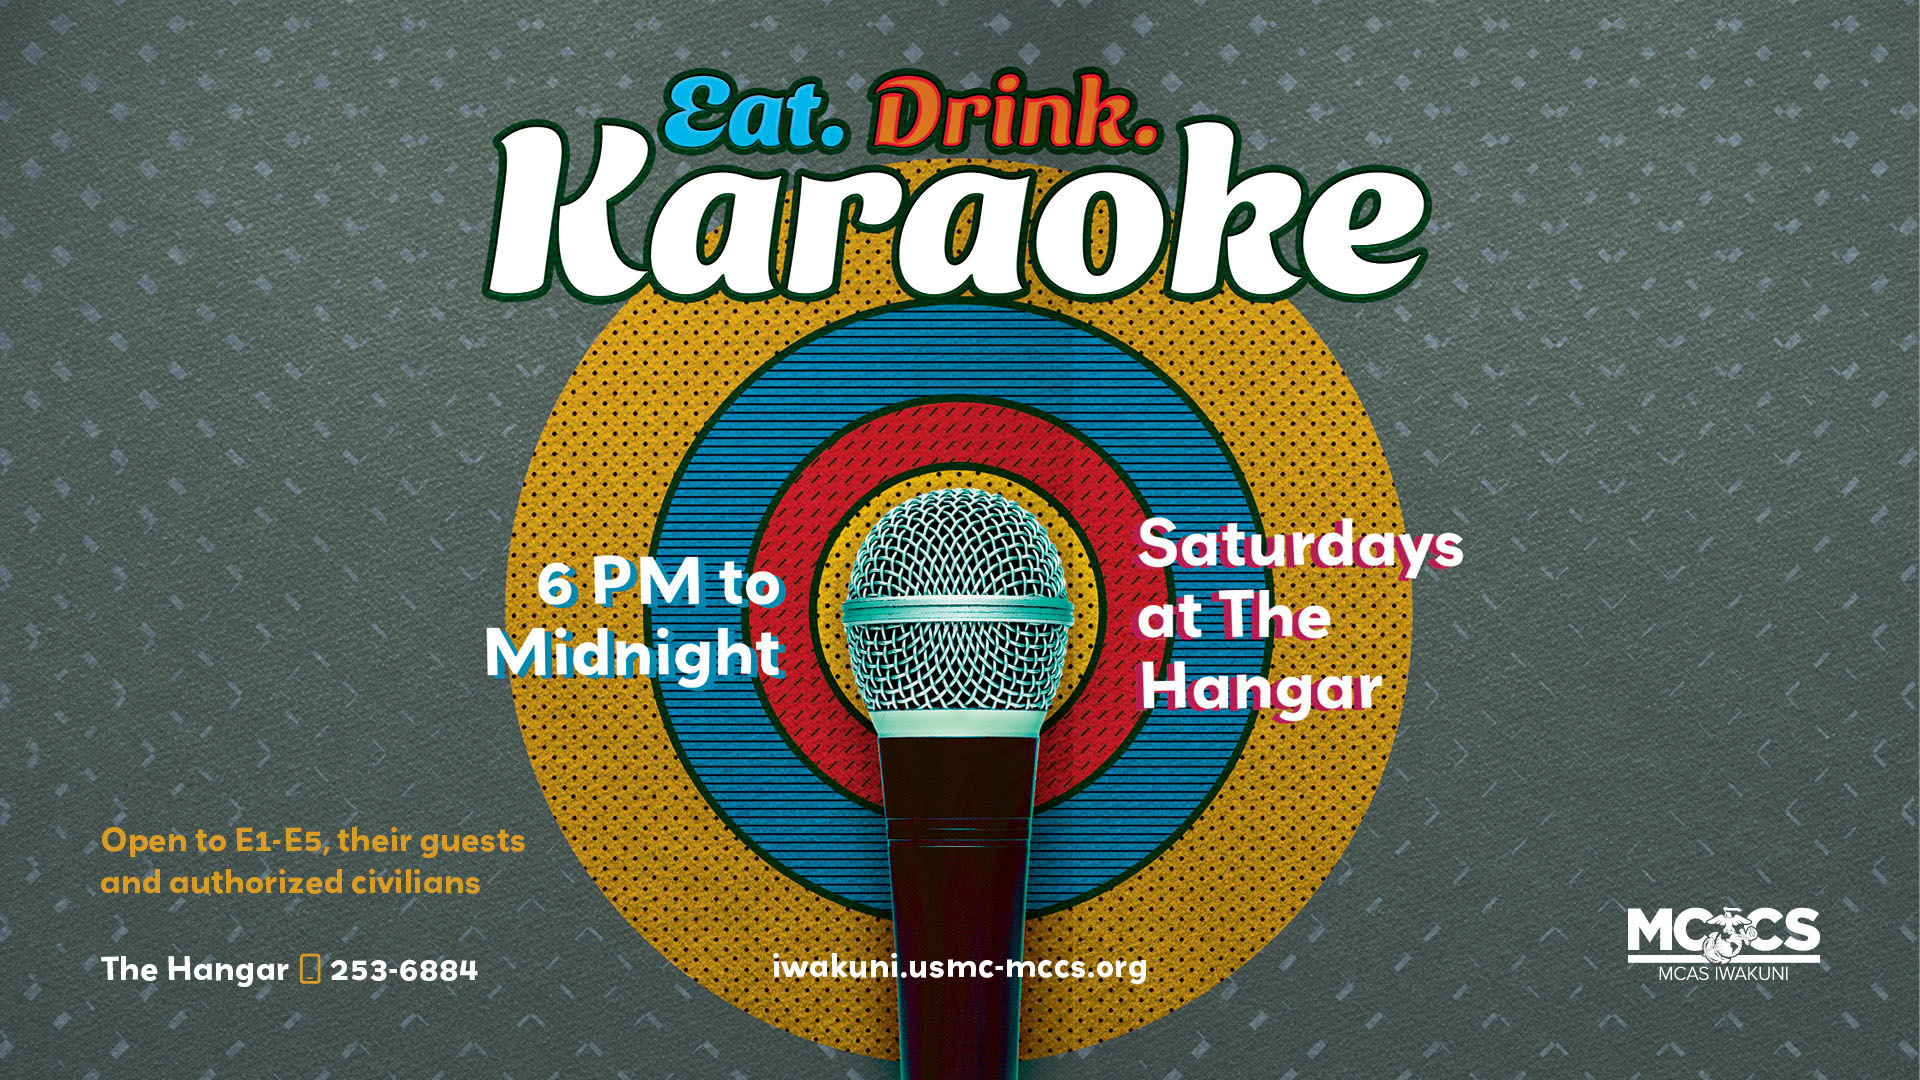 Eat, Drink, & Karaoke